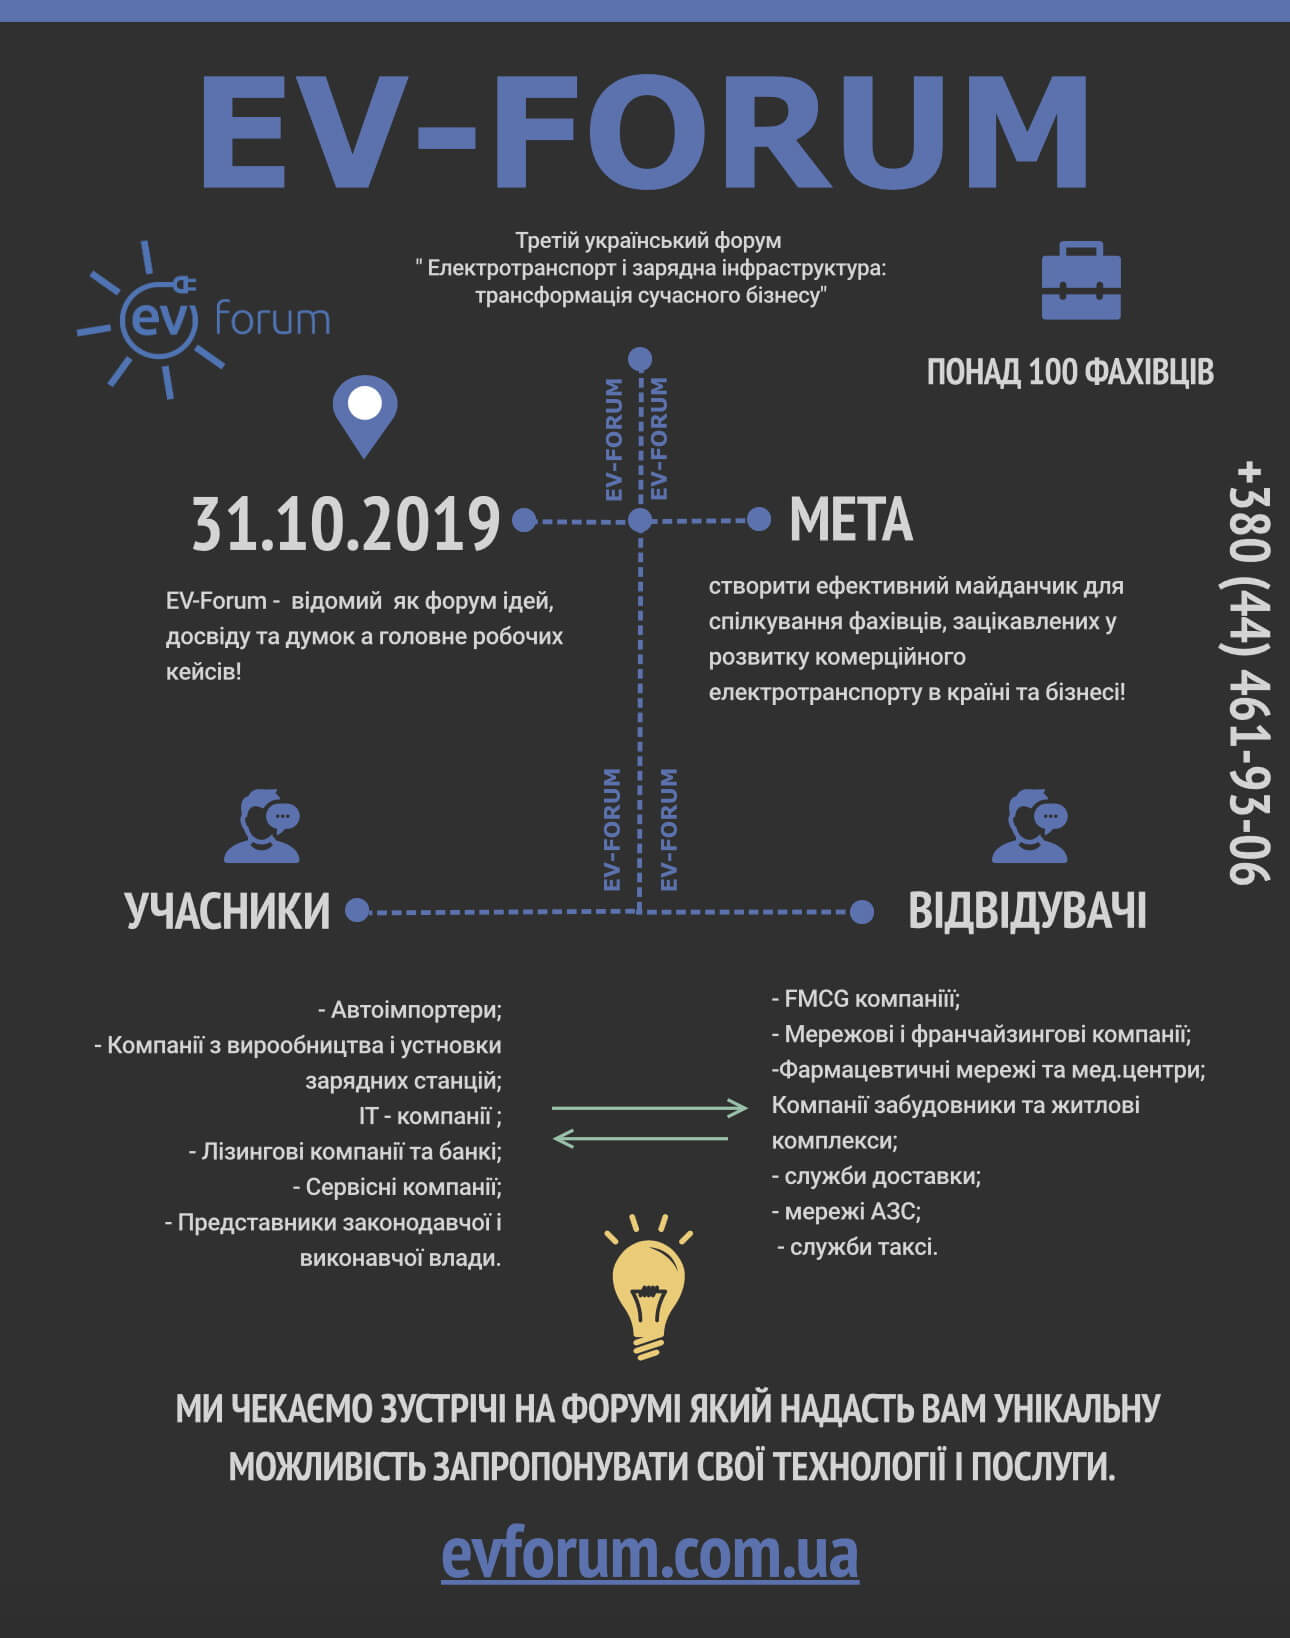 Что интересного предложит Третий украинский EV-Forum 2019?